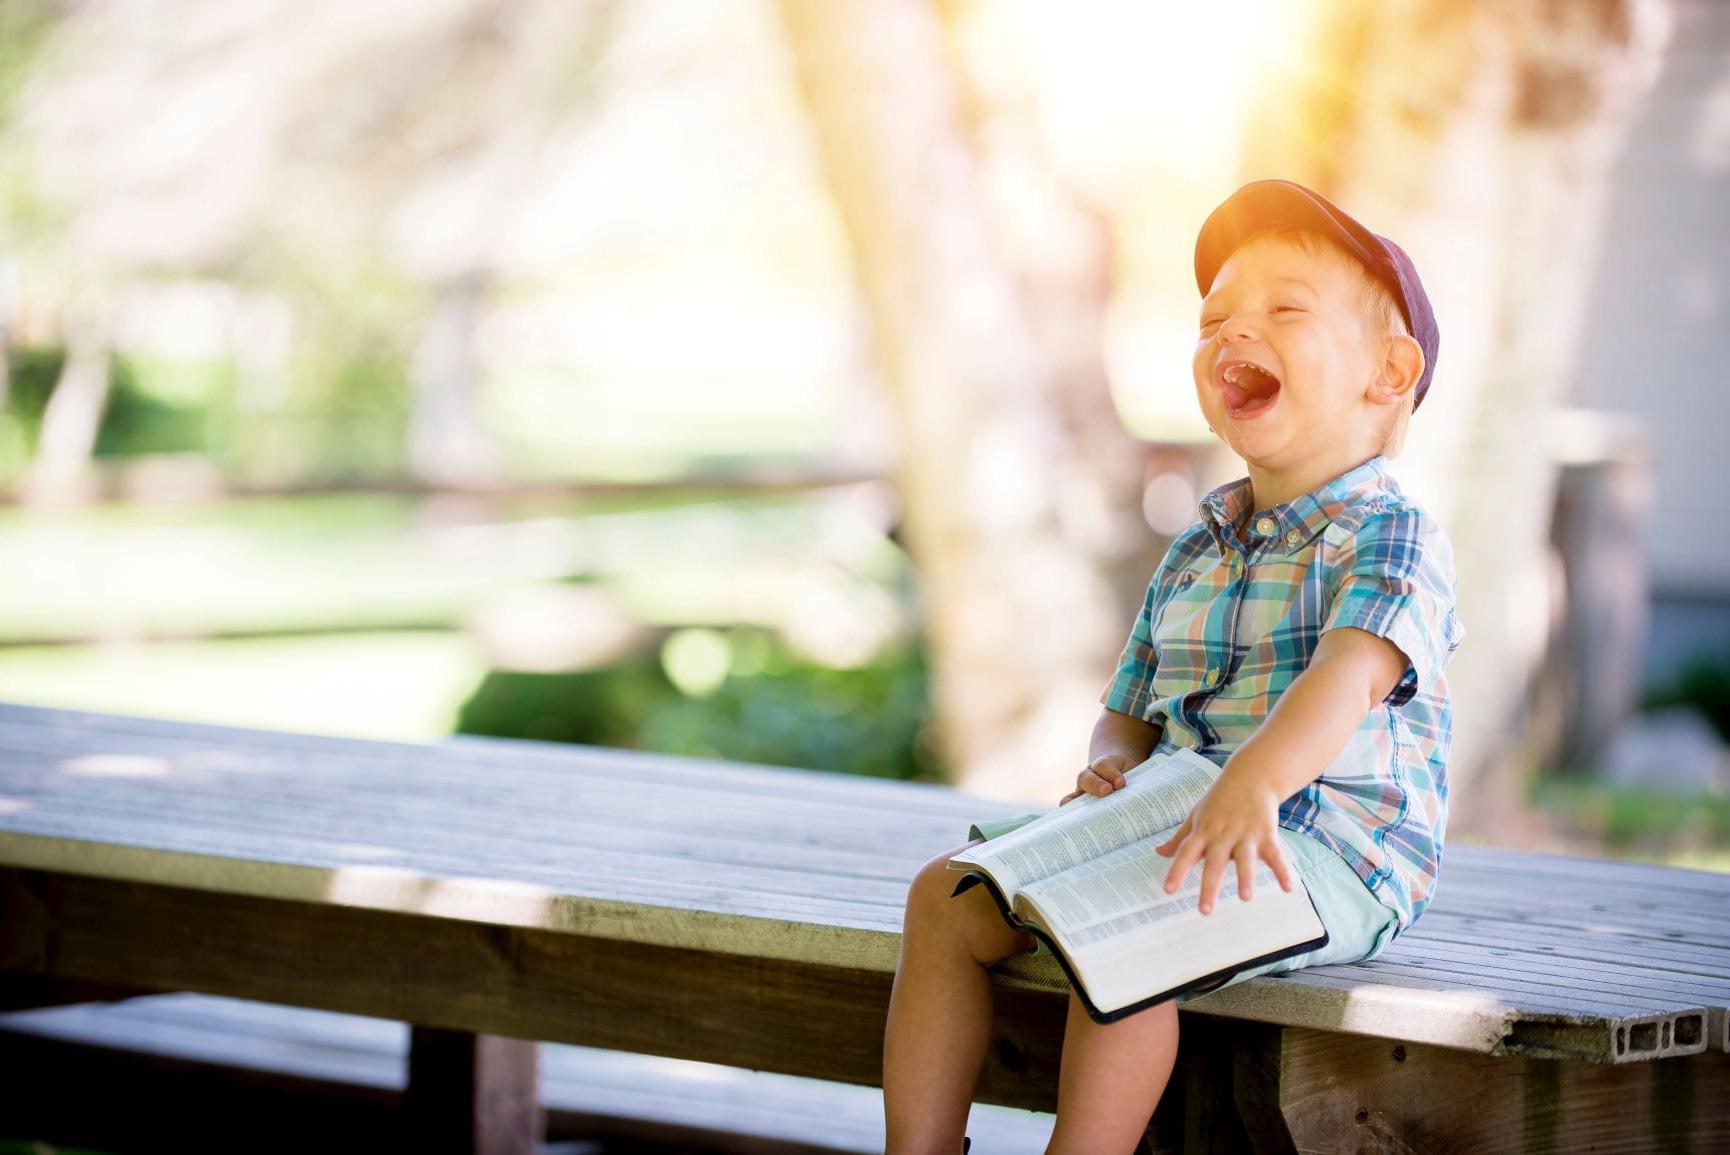 穿着格子衬衫和帽子的孩子坐在外面的长凳上拿着书笑